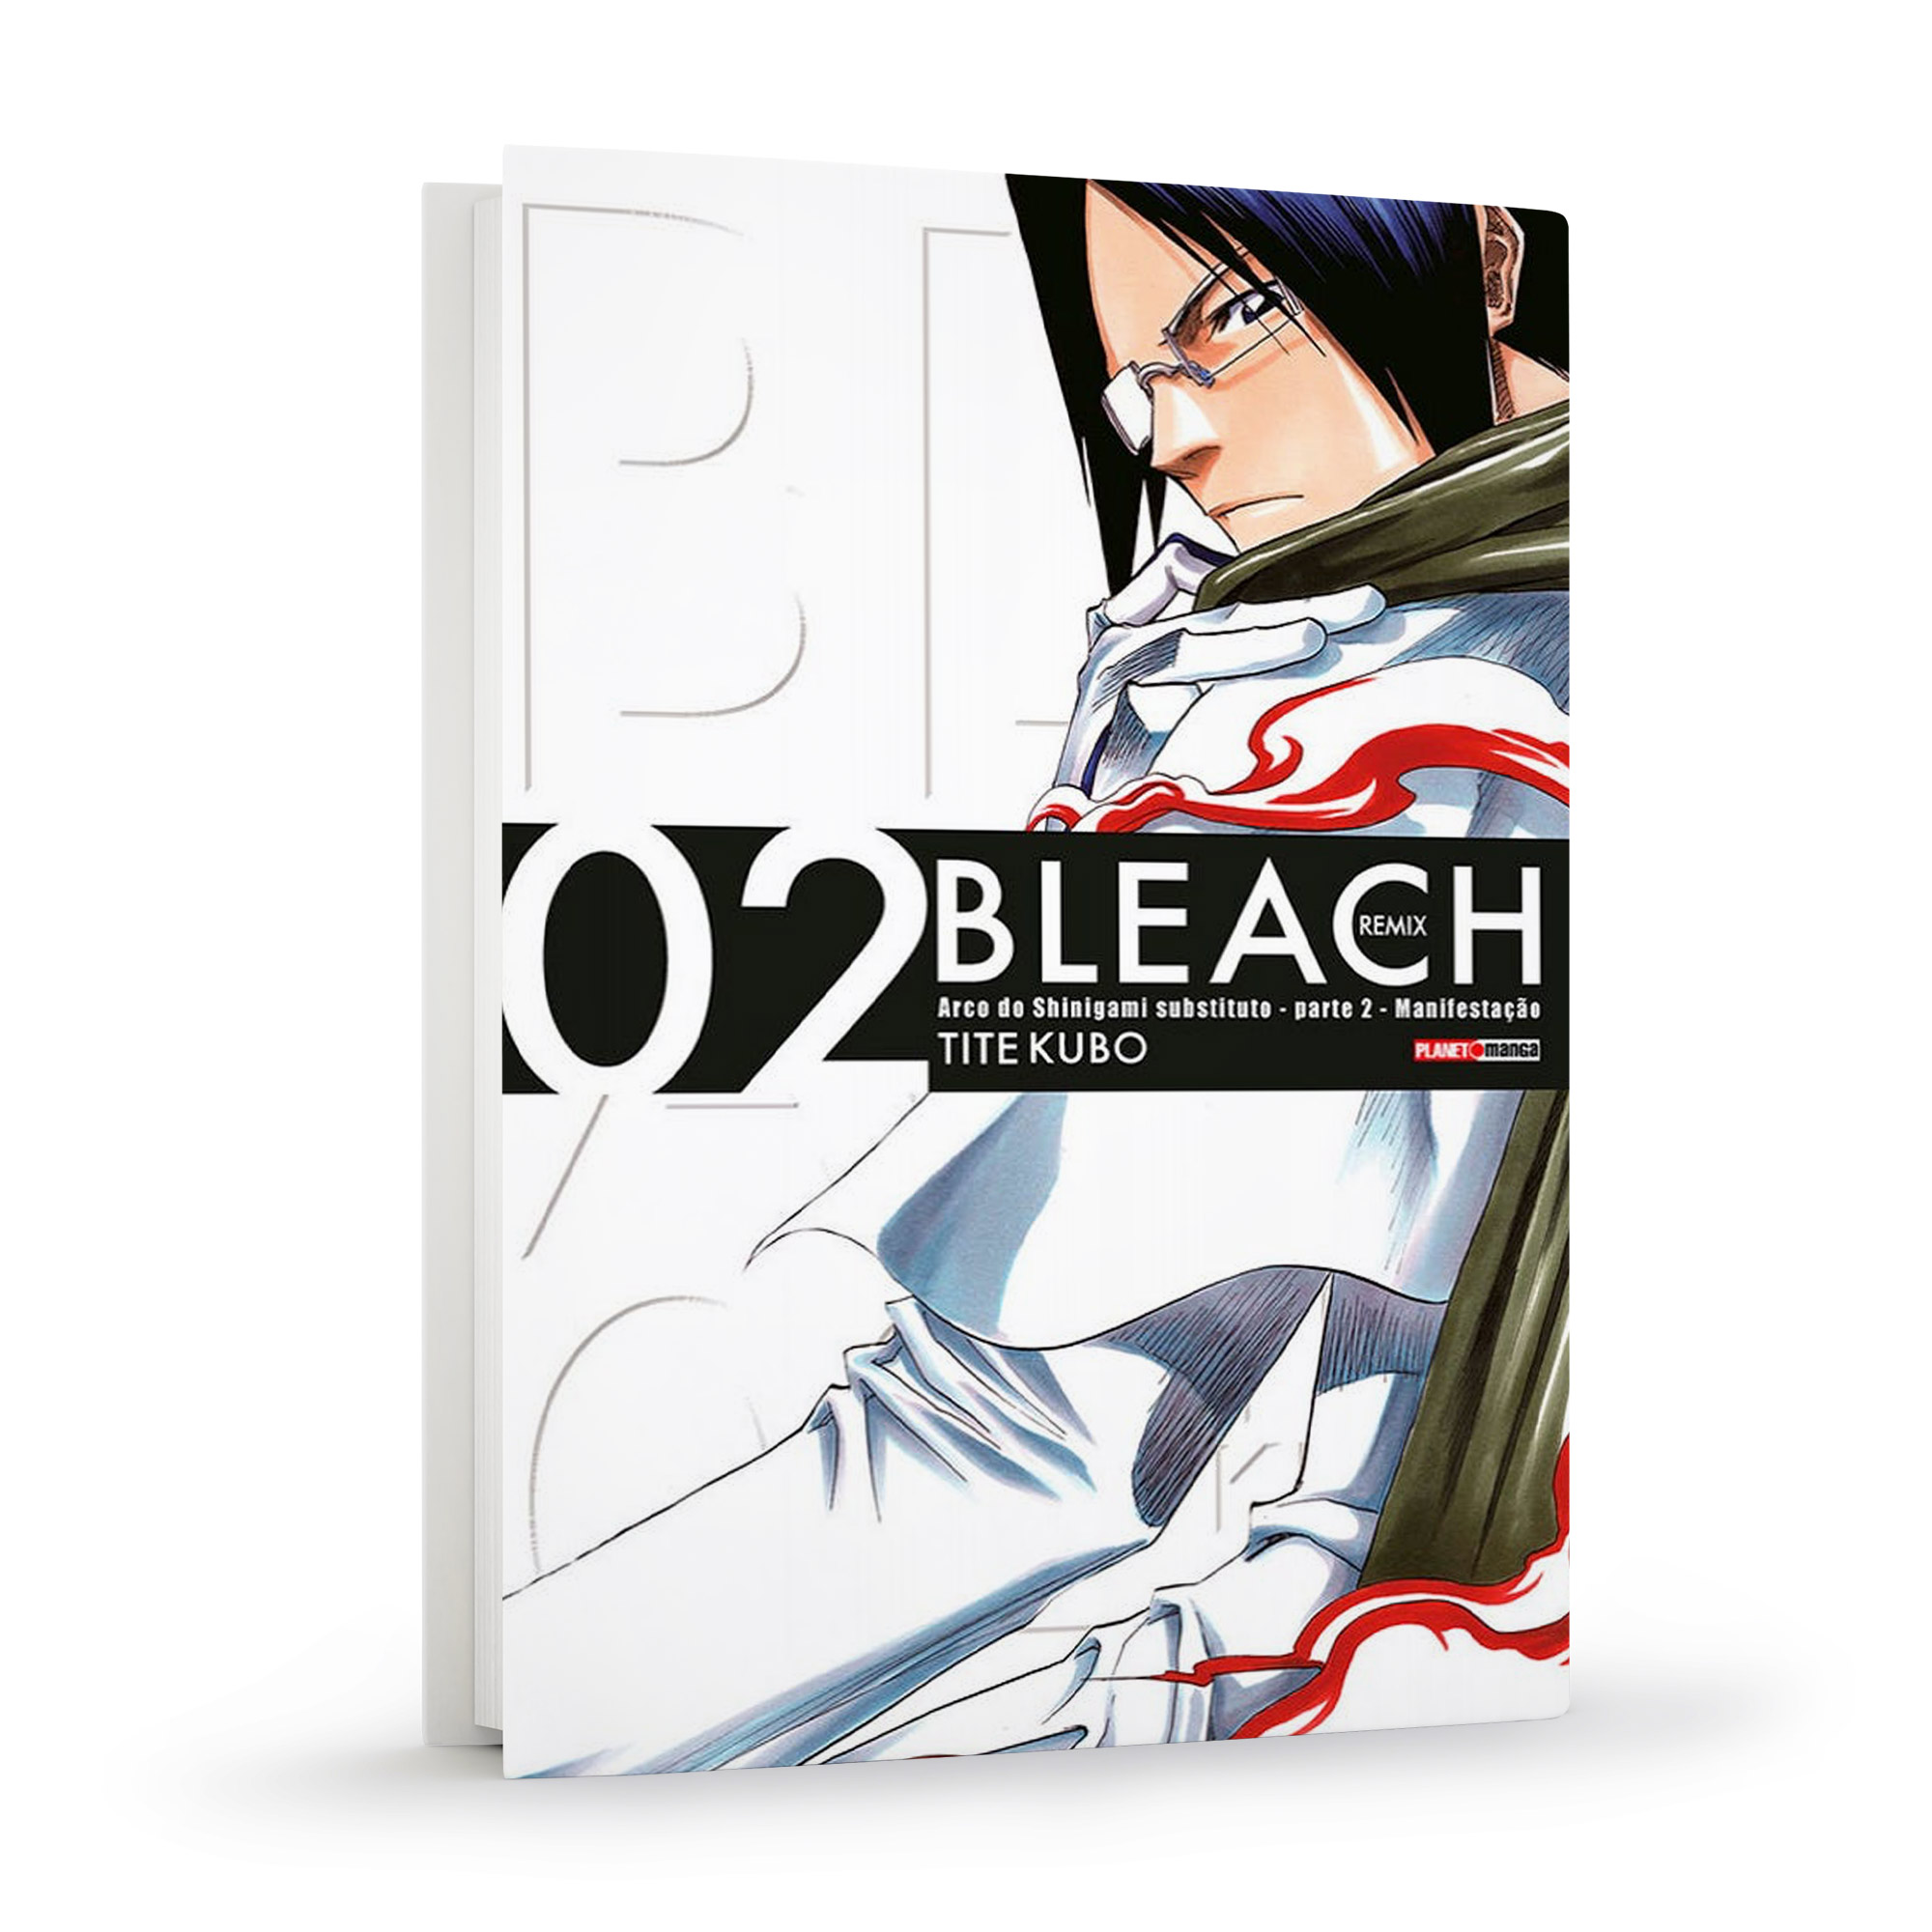 Bleach Remix - Vol. 2